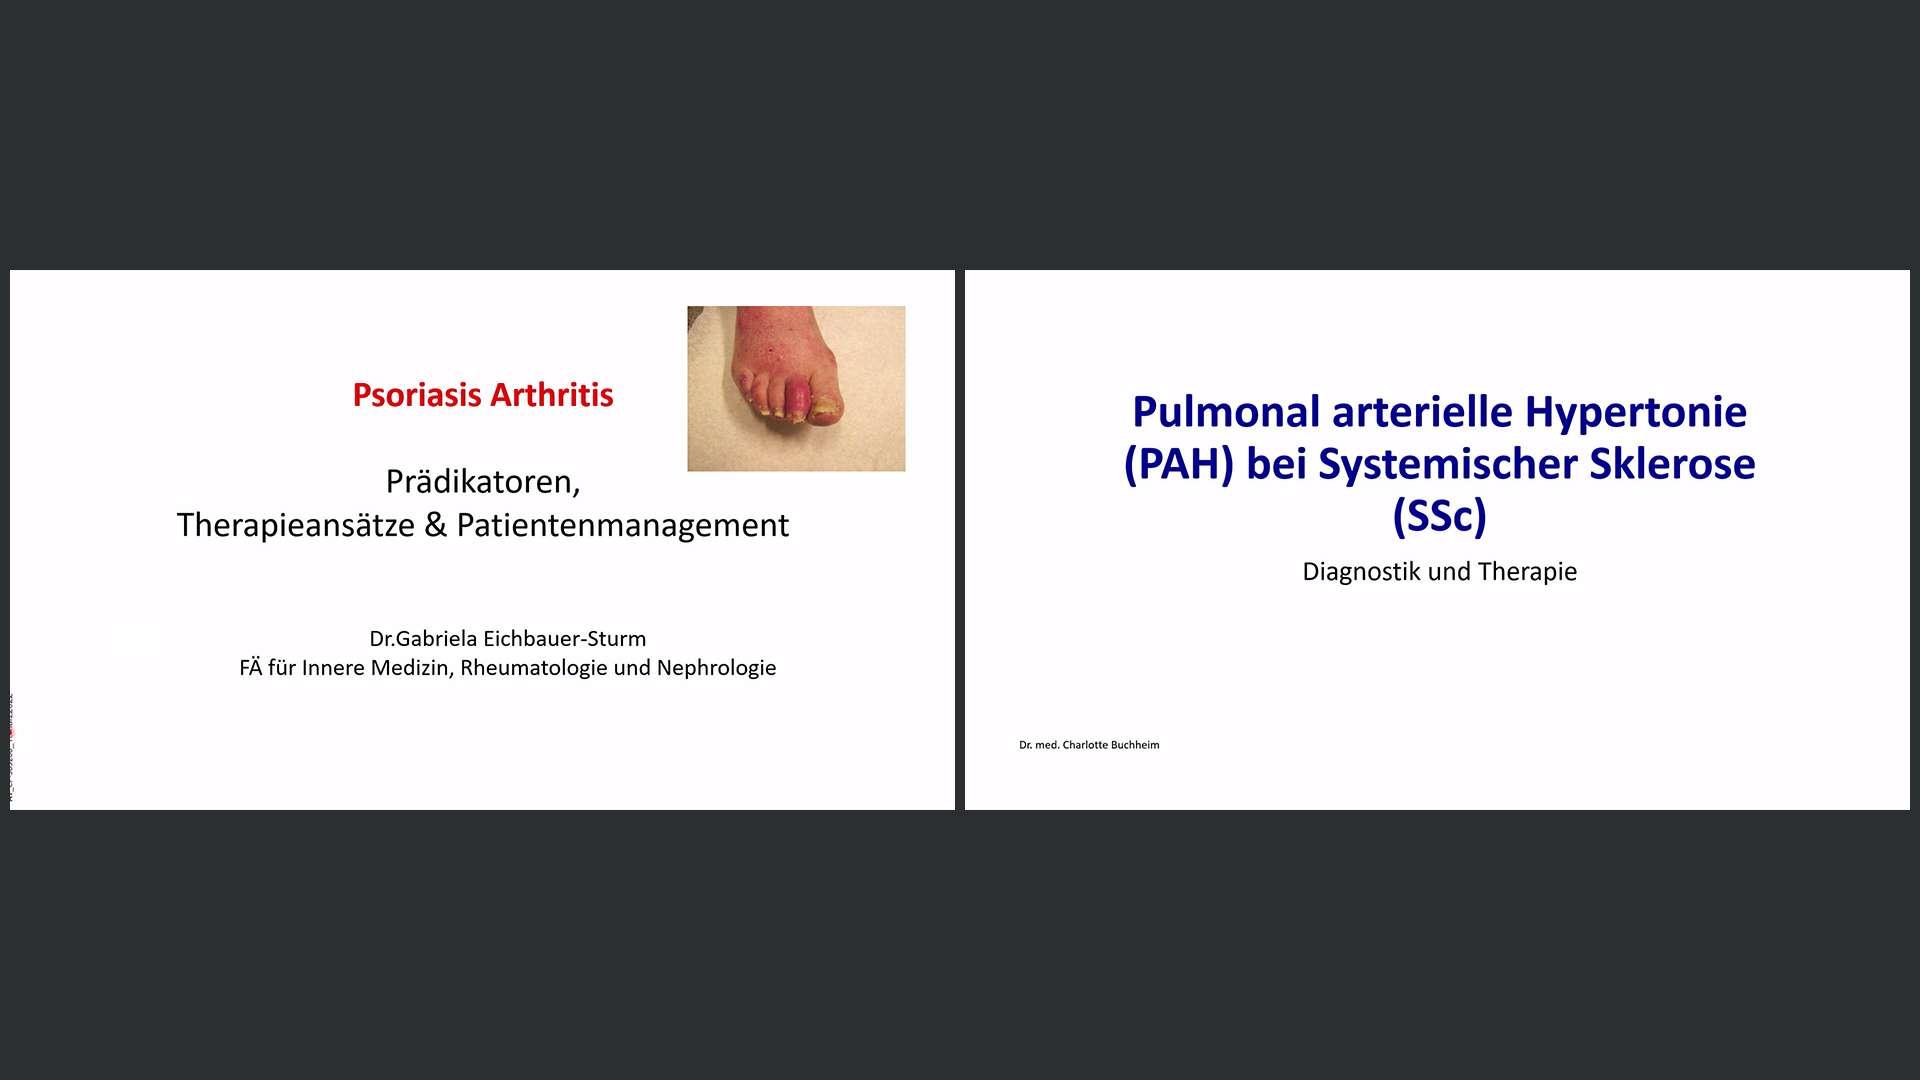 Psoriasis-Arthritis und PAH bei Systemischer Sklerose